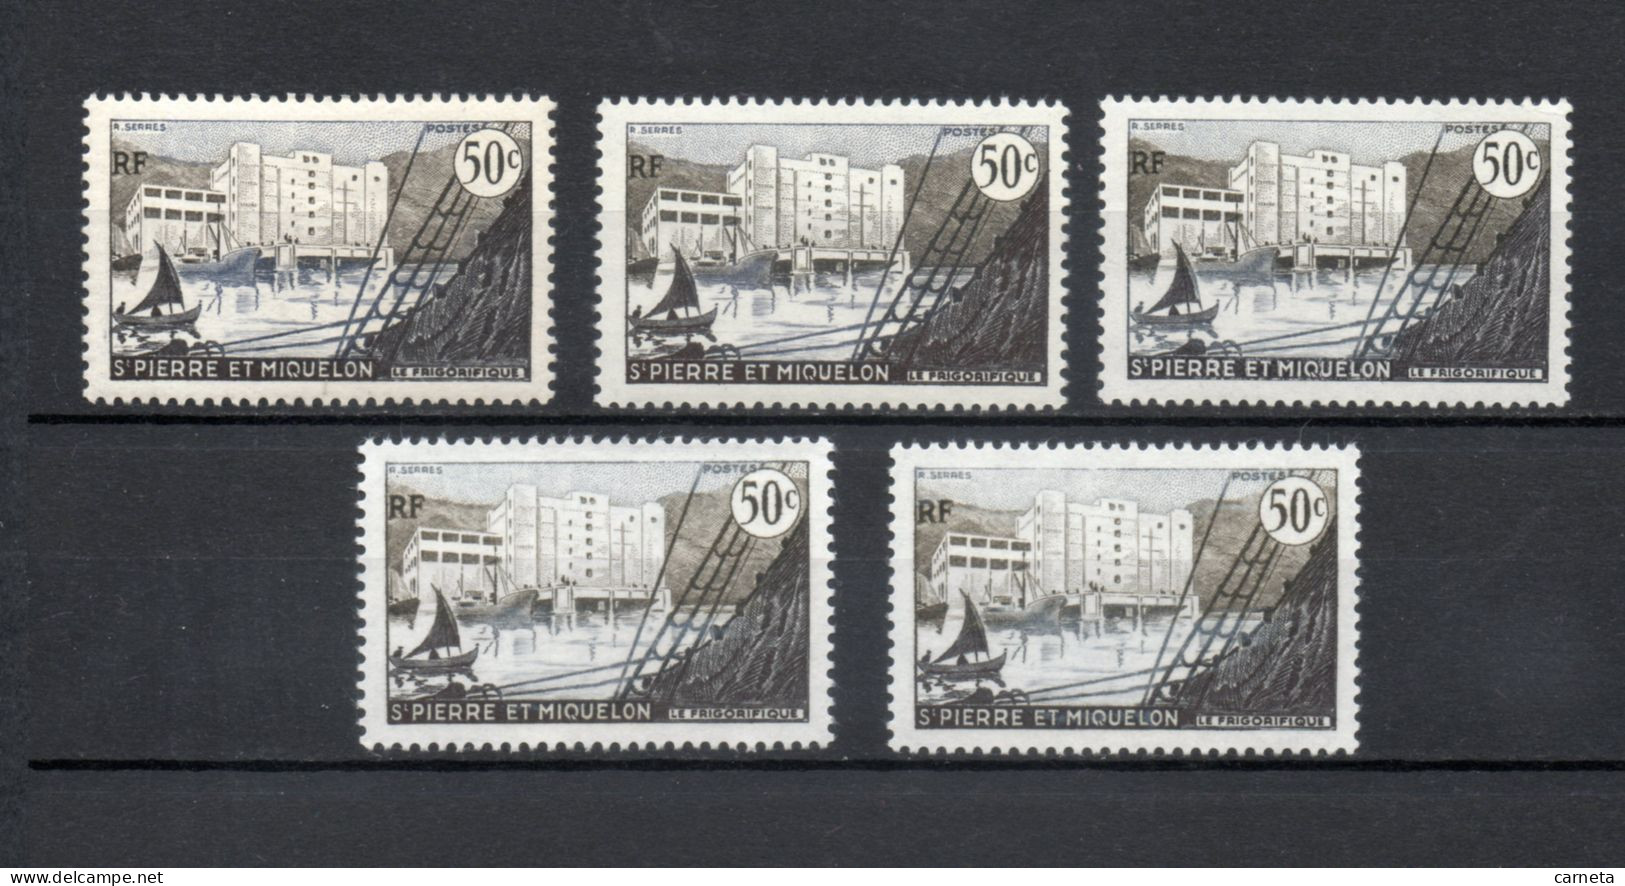 SAINT PIERRE ET MIQUELON N° 349  CINQ EXEMPLAIRES  NEUF SANS CHARNIERE COTE  7.50€     BATEAUX PORT - Unused Stamps